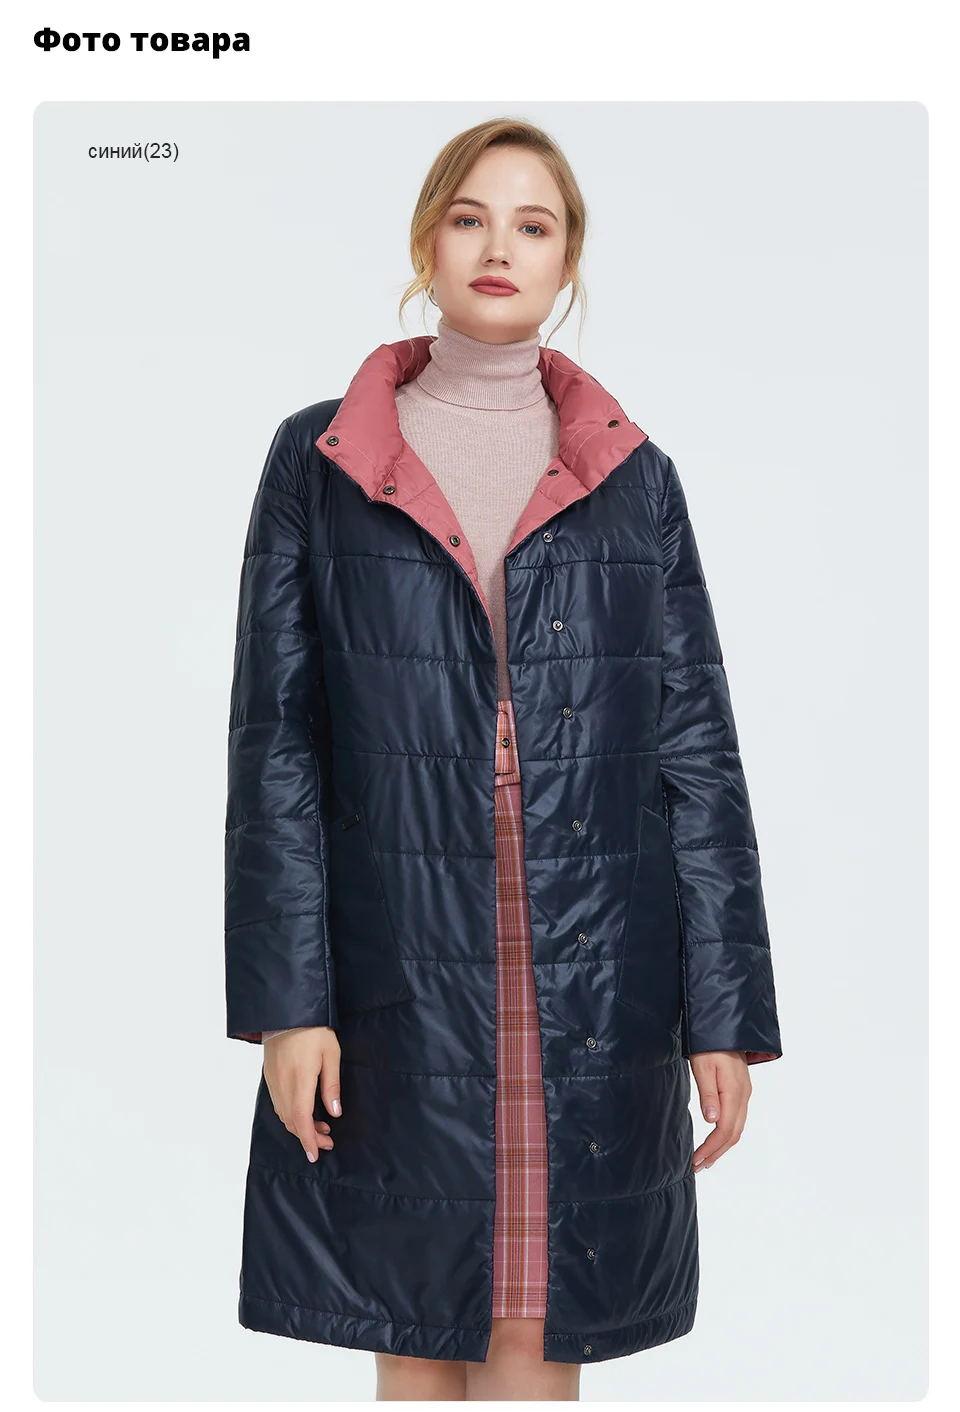 Astrid осень новое поступление тренч женская верхняя одежда высокое качество весна-осень длинное и модное стильное пальто для женщин AM-1960